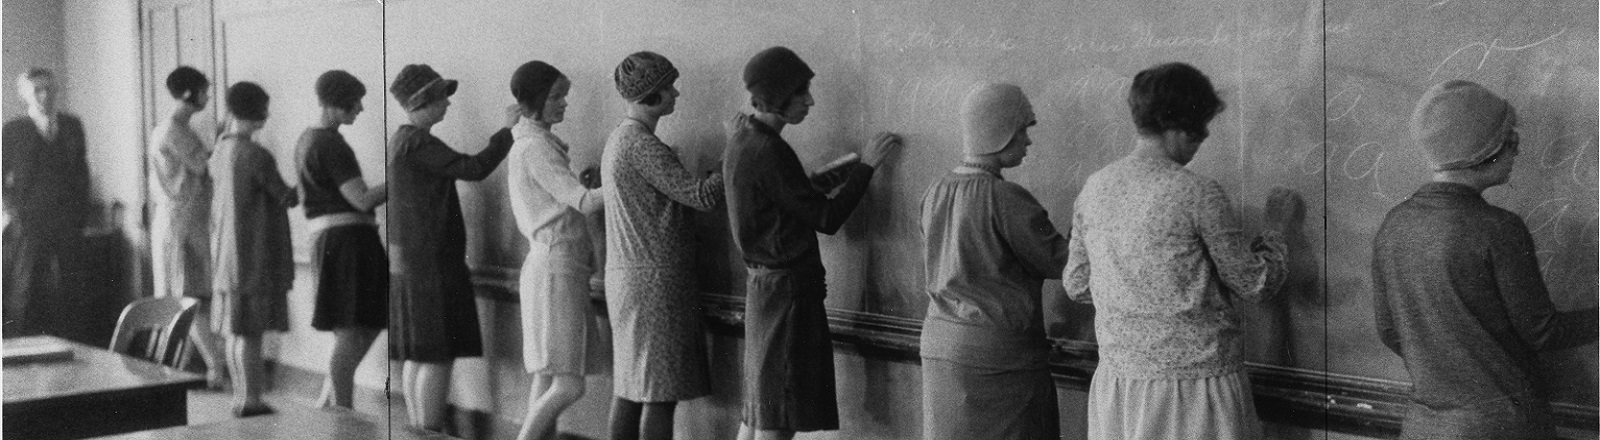 Vintage photo of student teachers